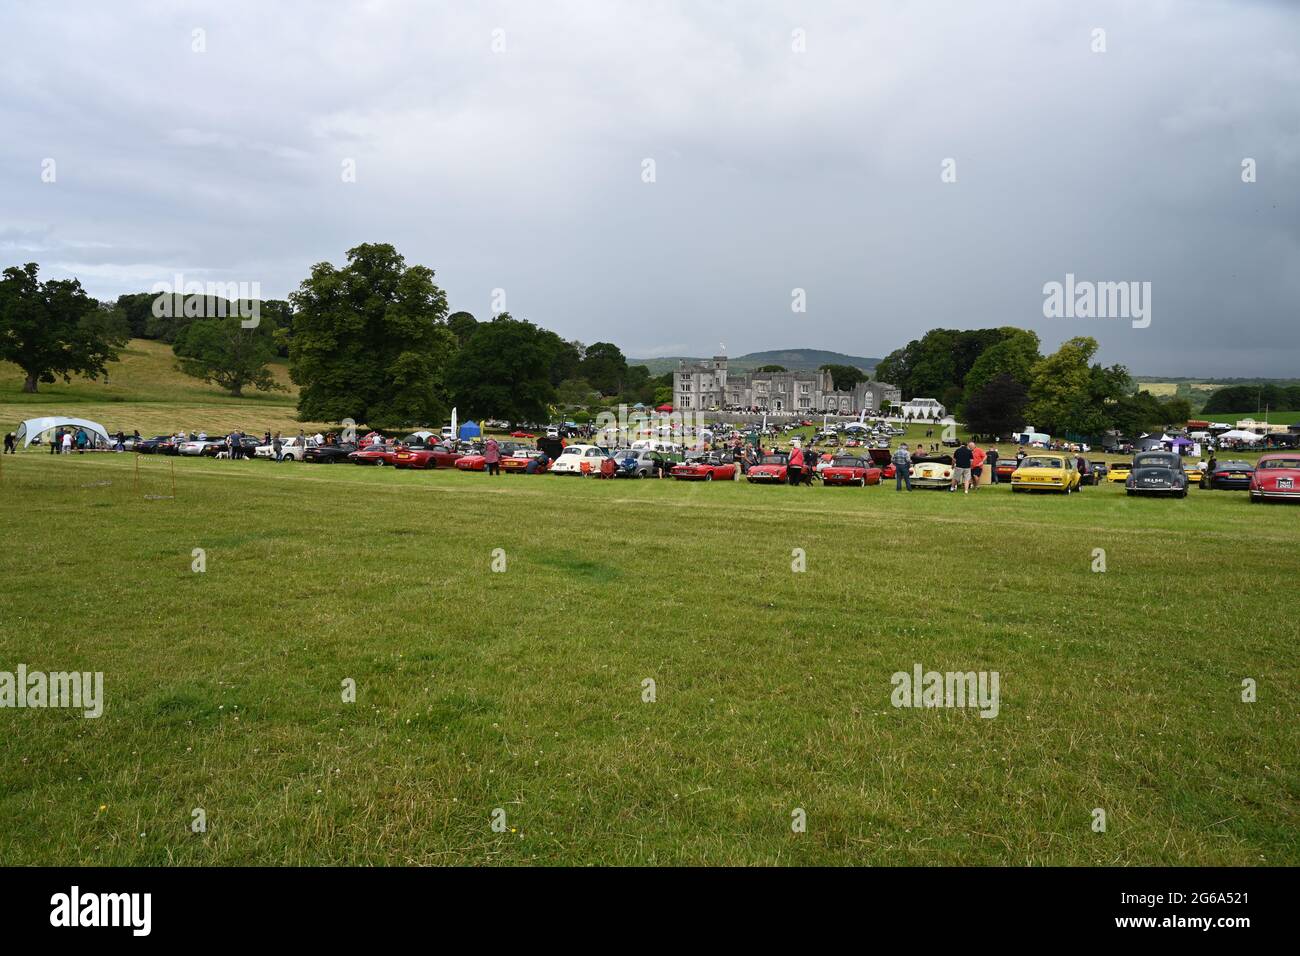 Jährliche Automobilausstellung in Leighton Hall Carnforth, Lancashire, 4. Juli 2021. Stockfoto